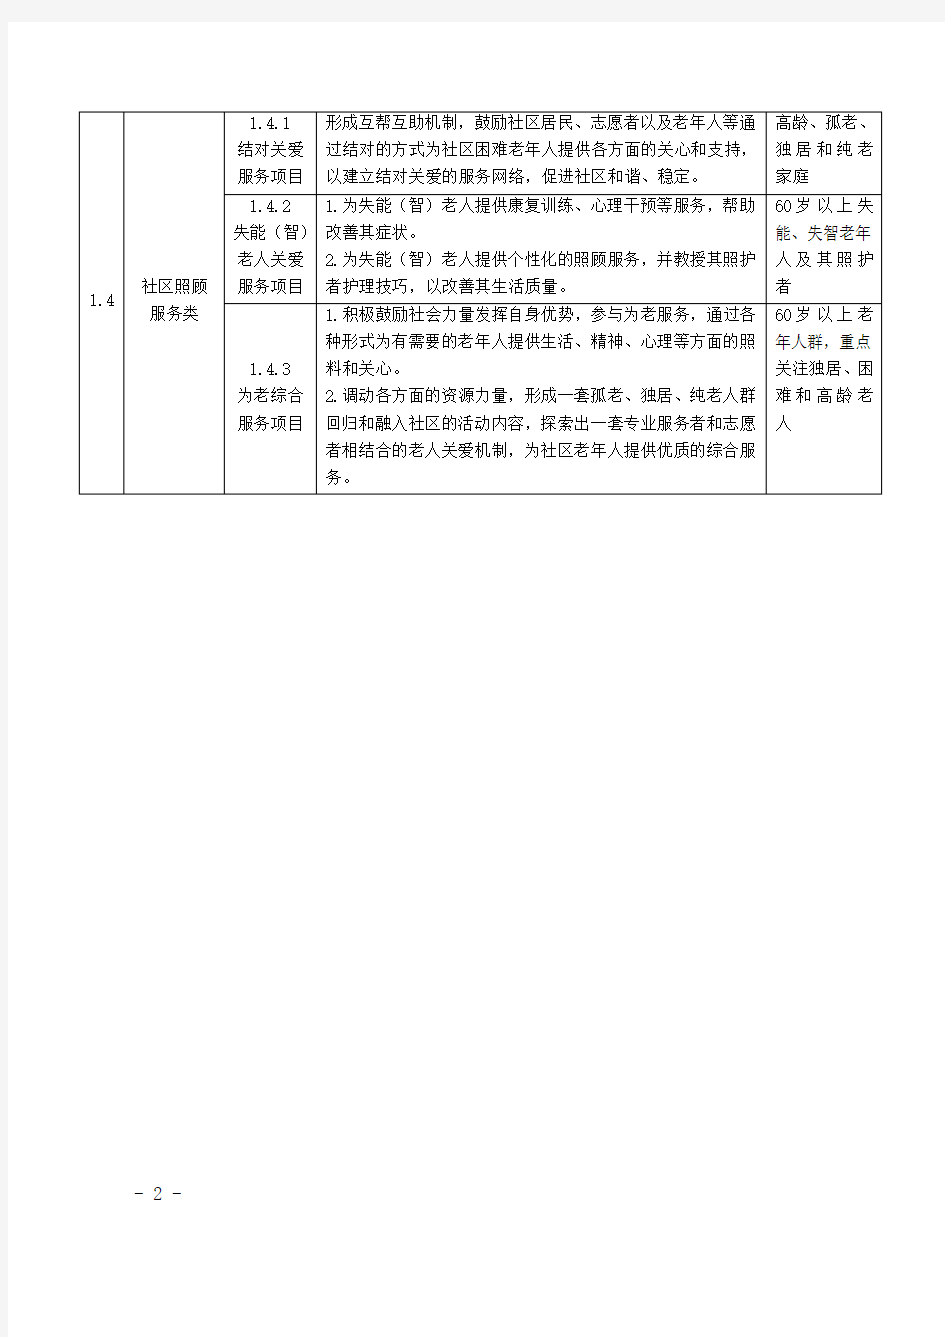 上海市社区公益服务项目明细目录表.doc-附件